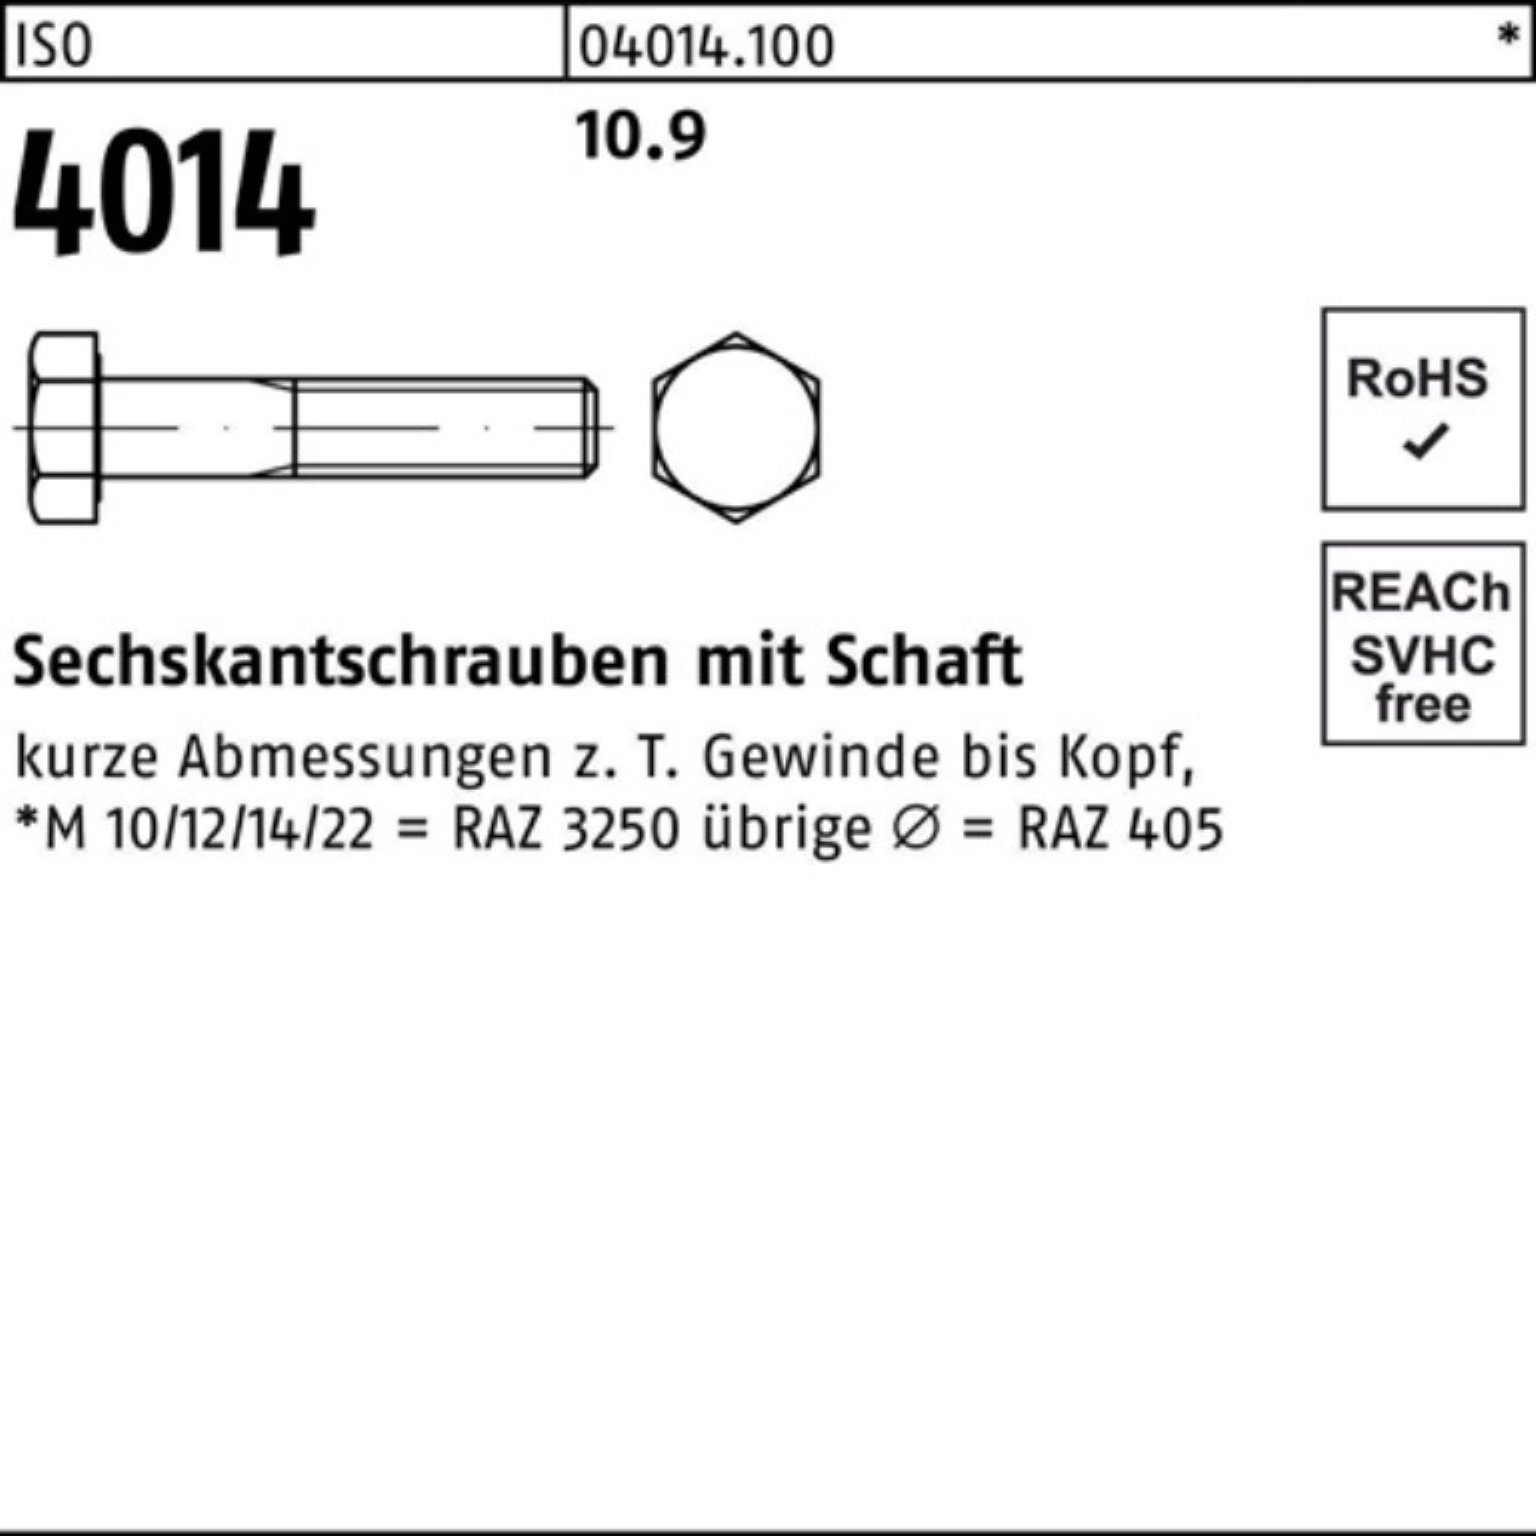 Bufab Sechskantschraube 100er Pack Sechskantschraube 25 M14x 4014 10.9 Stück ISO 190 I Schaft